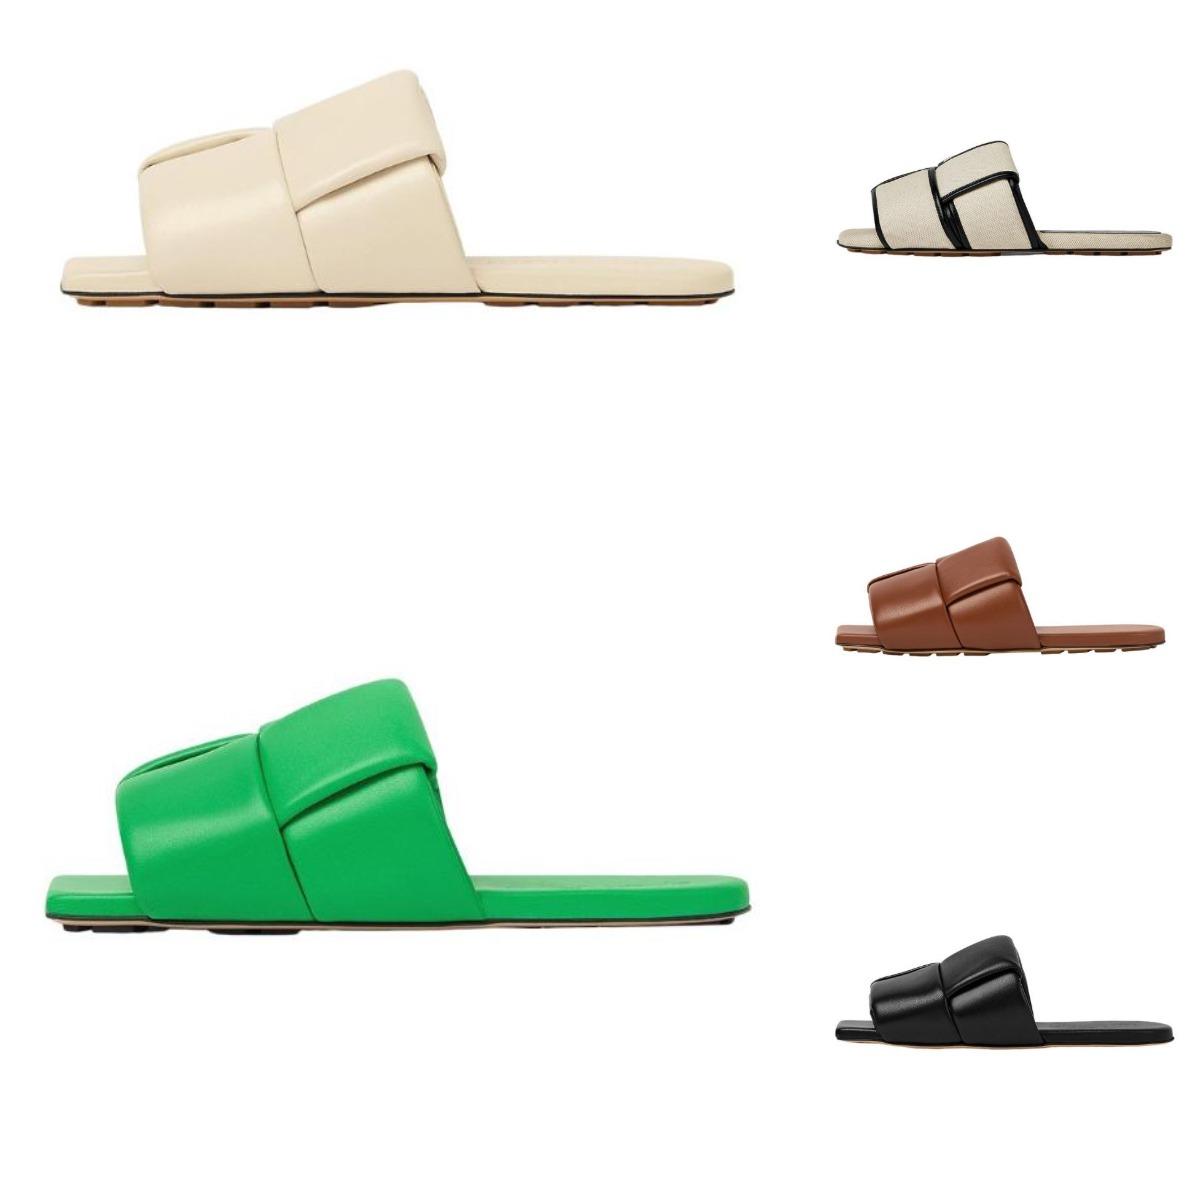 

2023 Lido Slider Sandals Designer Woman Slippers Beach Slides Flat Rubber Shoe Flip Flops for Men Women Green Toe Wear resistant bottegas sandal Slipper 35-40